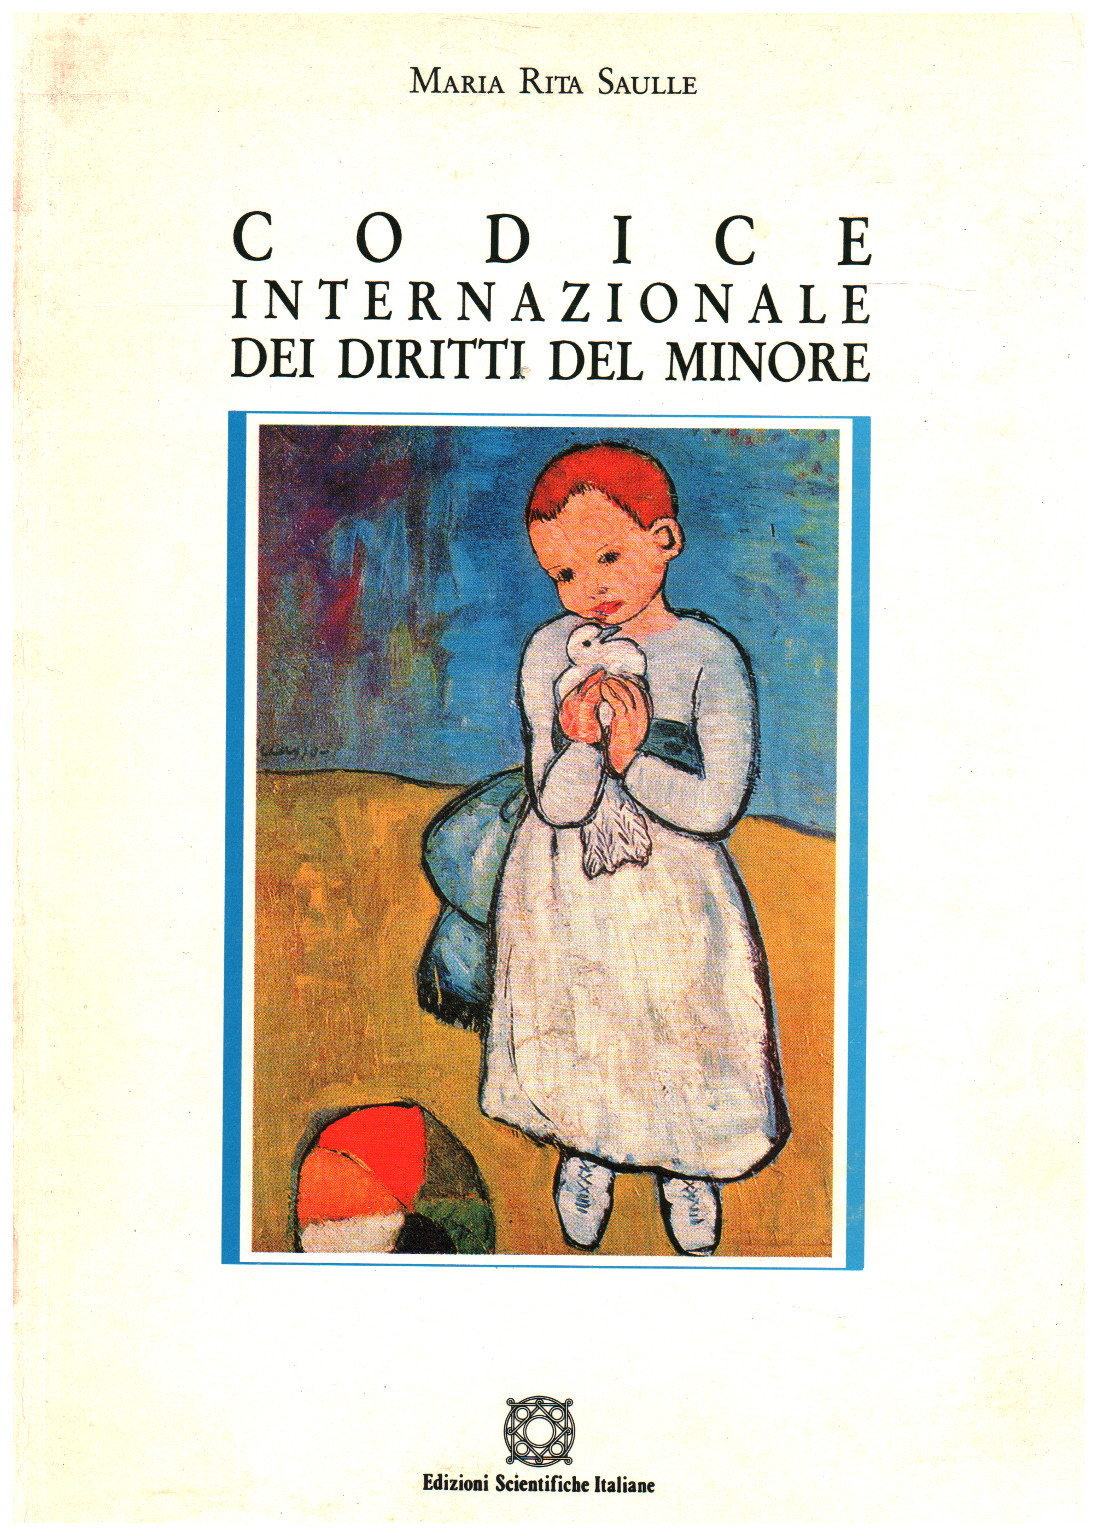 Codice internazionale dei diritti del minore, s.a.